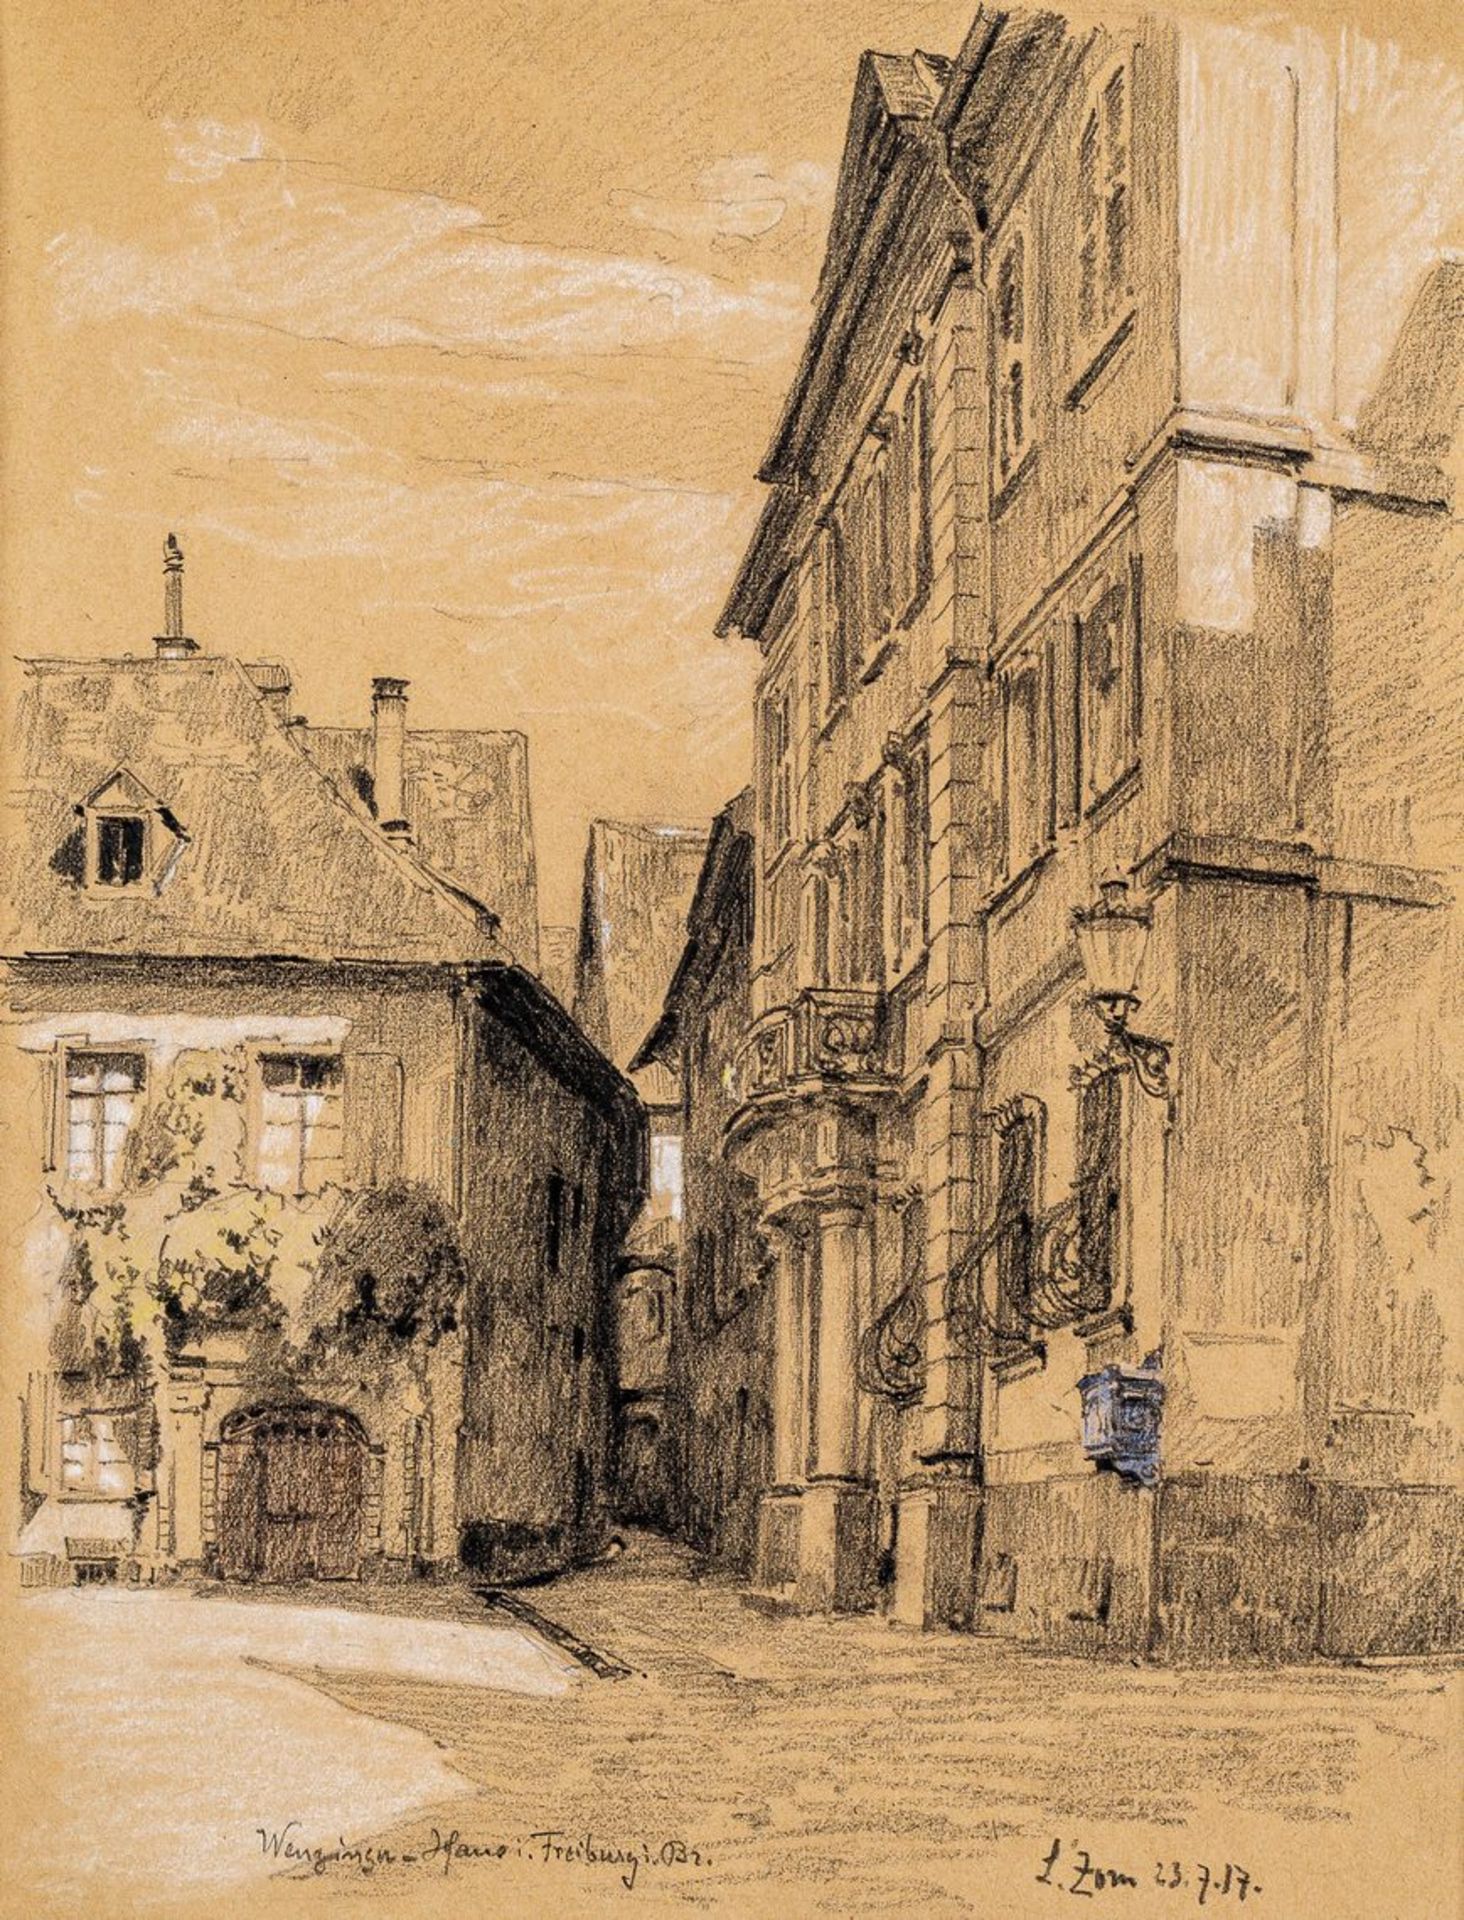 Zorn, Ludwig1865 Wertheim - 1921 Freiburg. Kohlezeichnung. Blick auf das Wenzinger Haus in Freiburg.